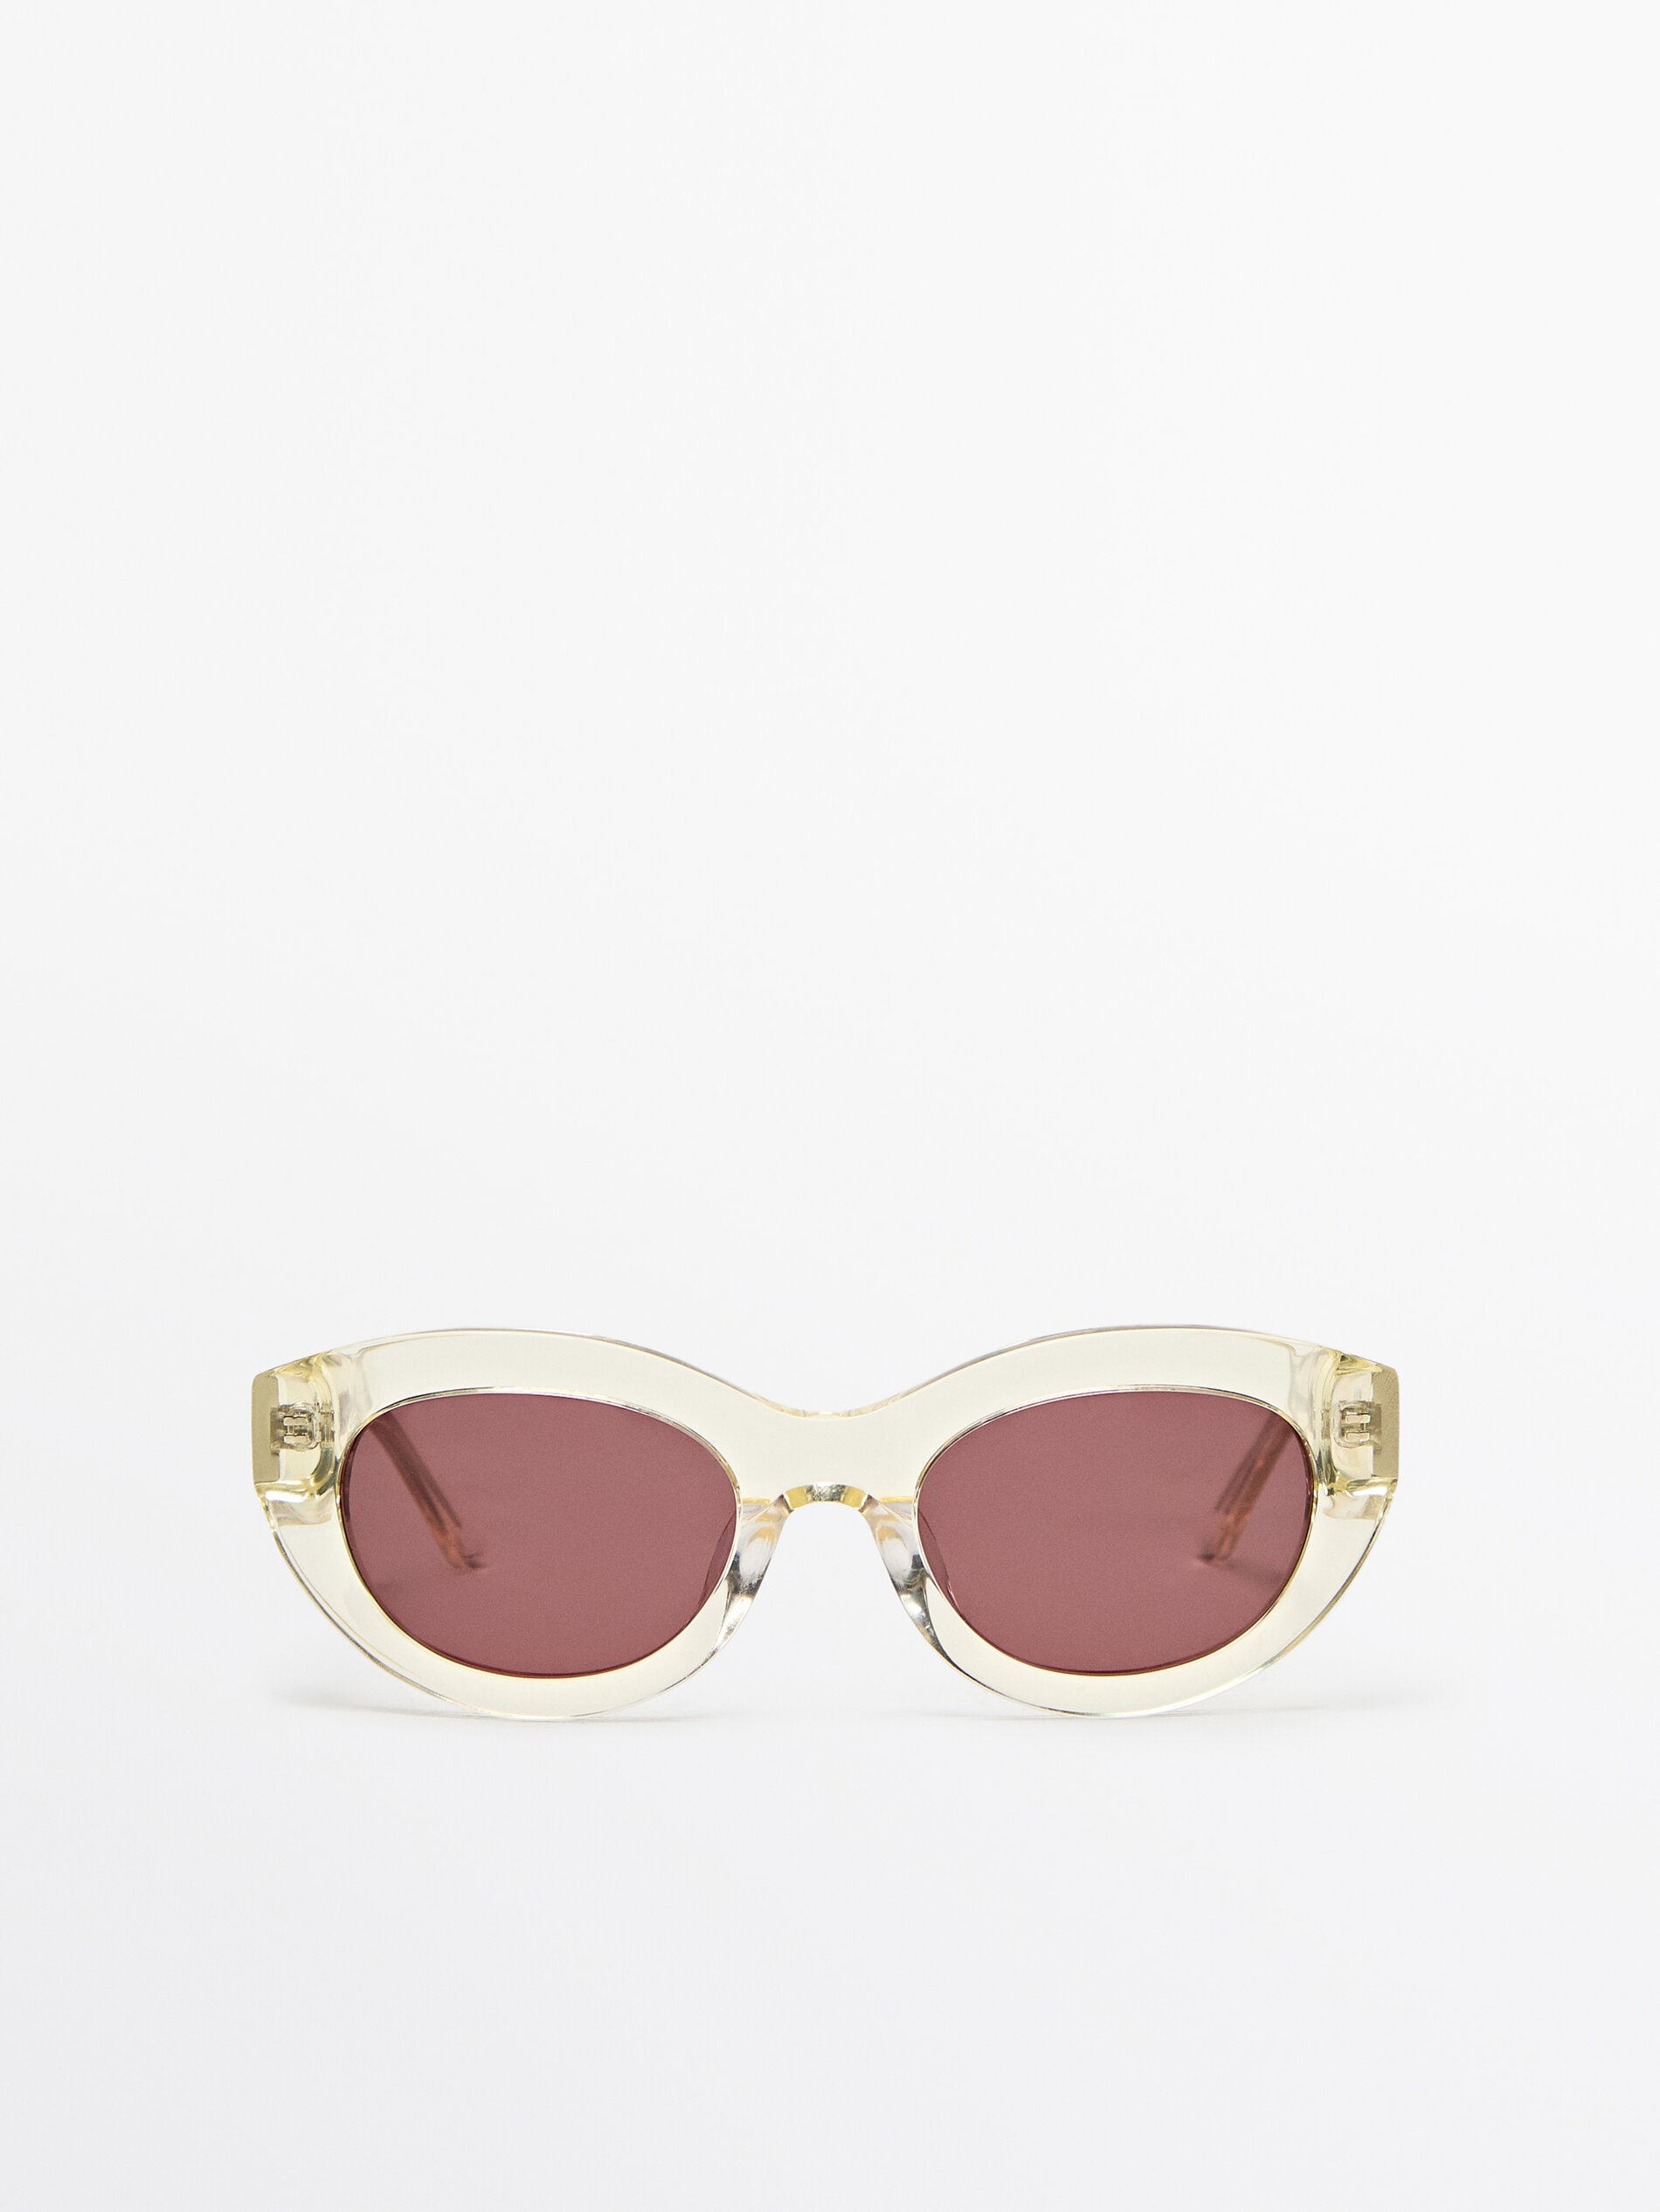 Овальные солнцезащитные очки Massimo Dutti, желтый